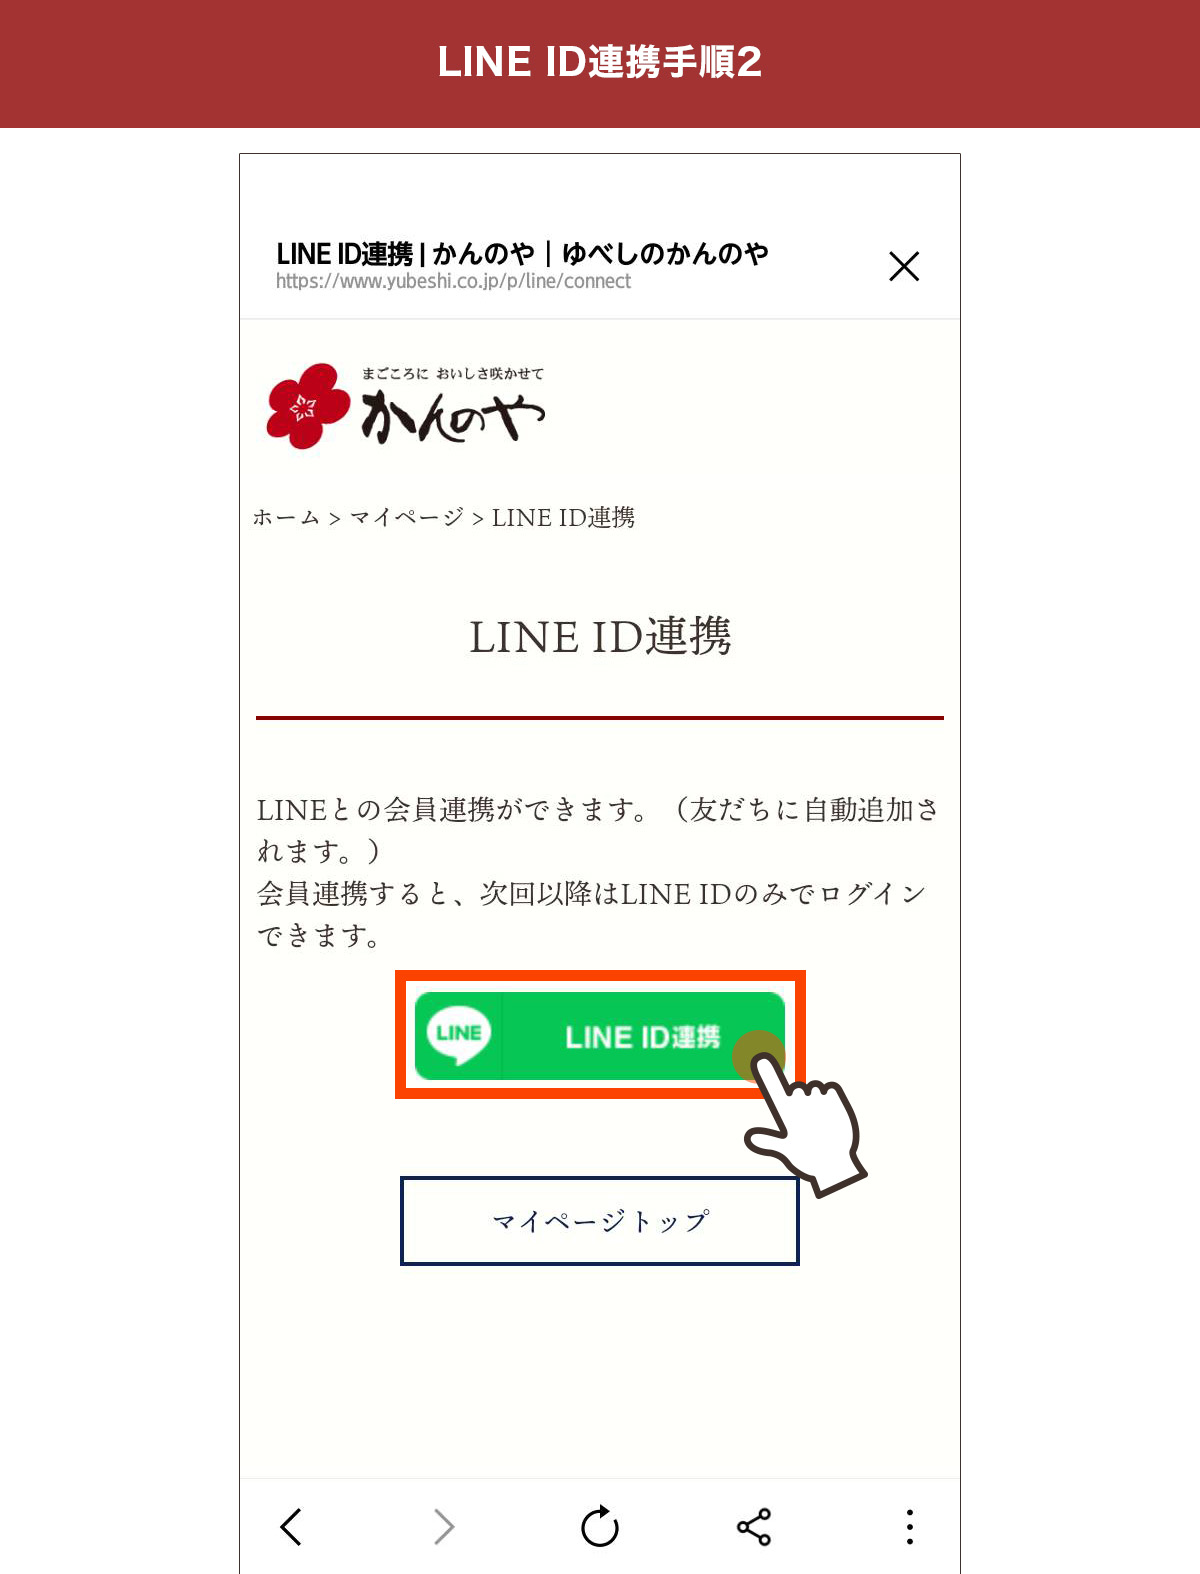 ラインID連携ページ中央に表示された緑色のラインID連携ボタンを押す